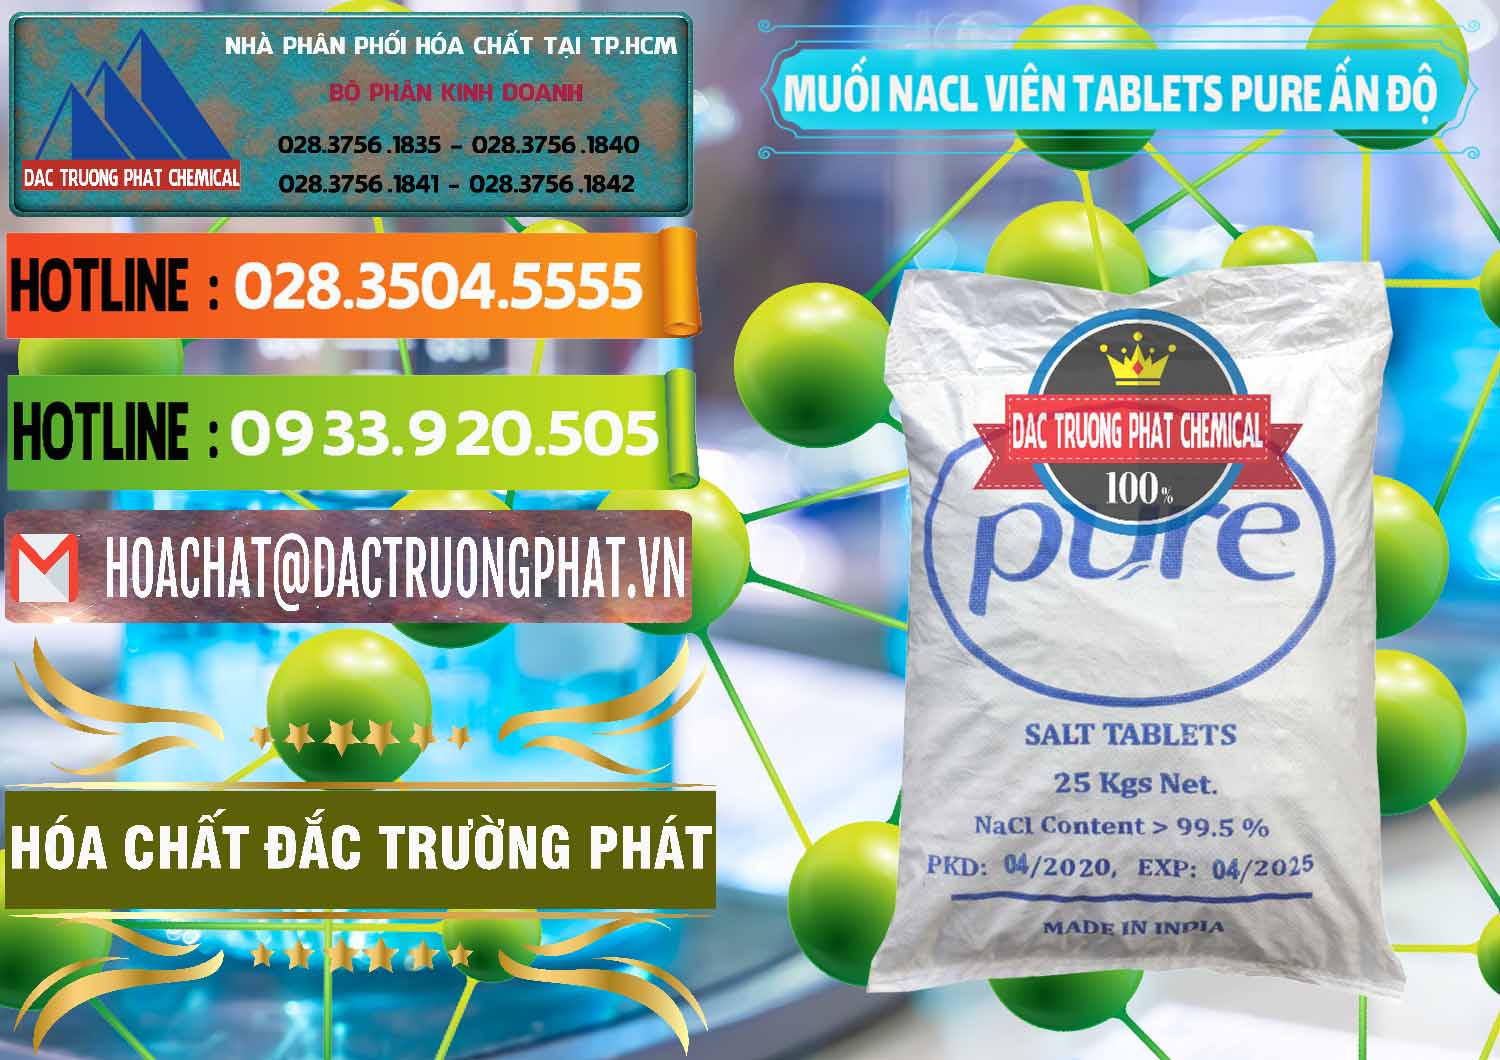 Nơi chuyên phân phối và bán Muối NaCL – Sodium Chloride Dạng Viên Tablets Pure Ấn Độ India - 0294 - Nơi chuyên phân phối - kinh doanh hóa chất tại TP.HCM - cungcaphoachat.com.vn